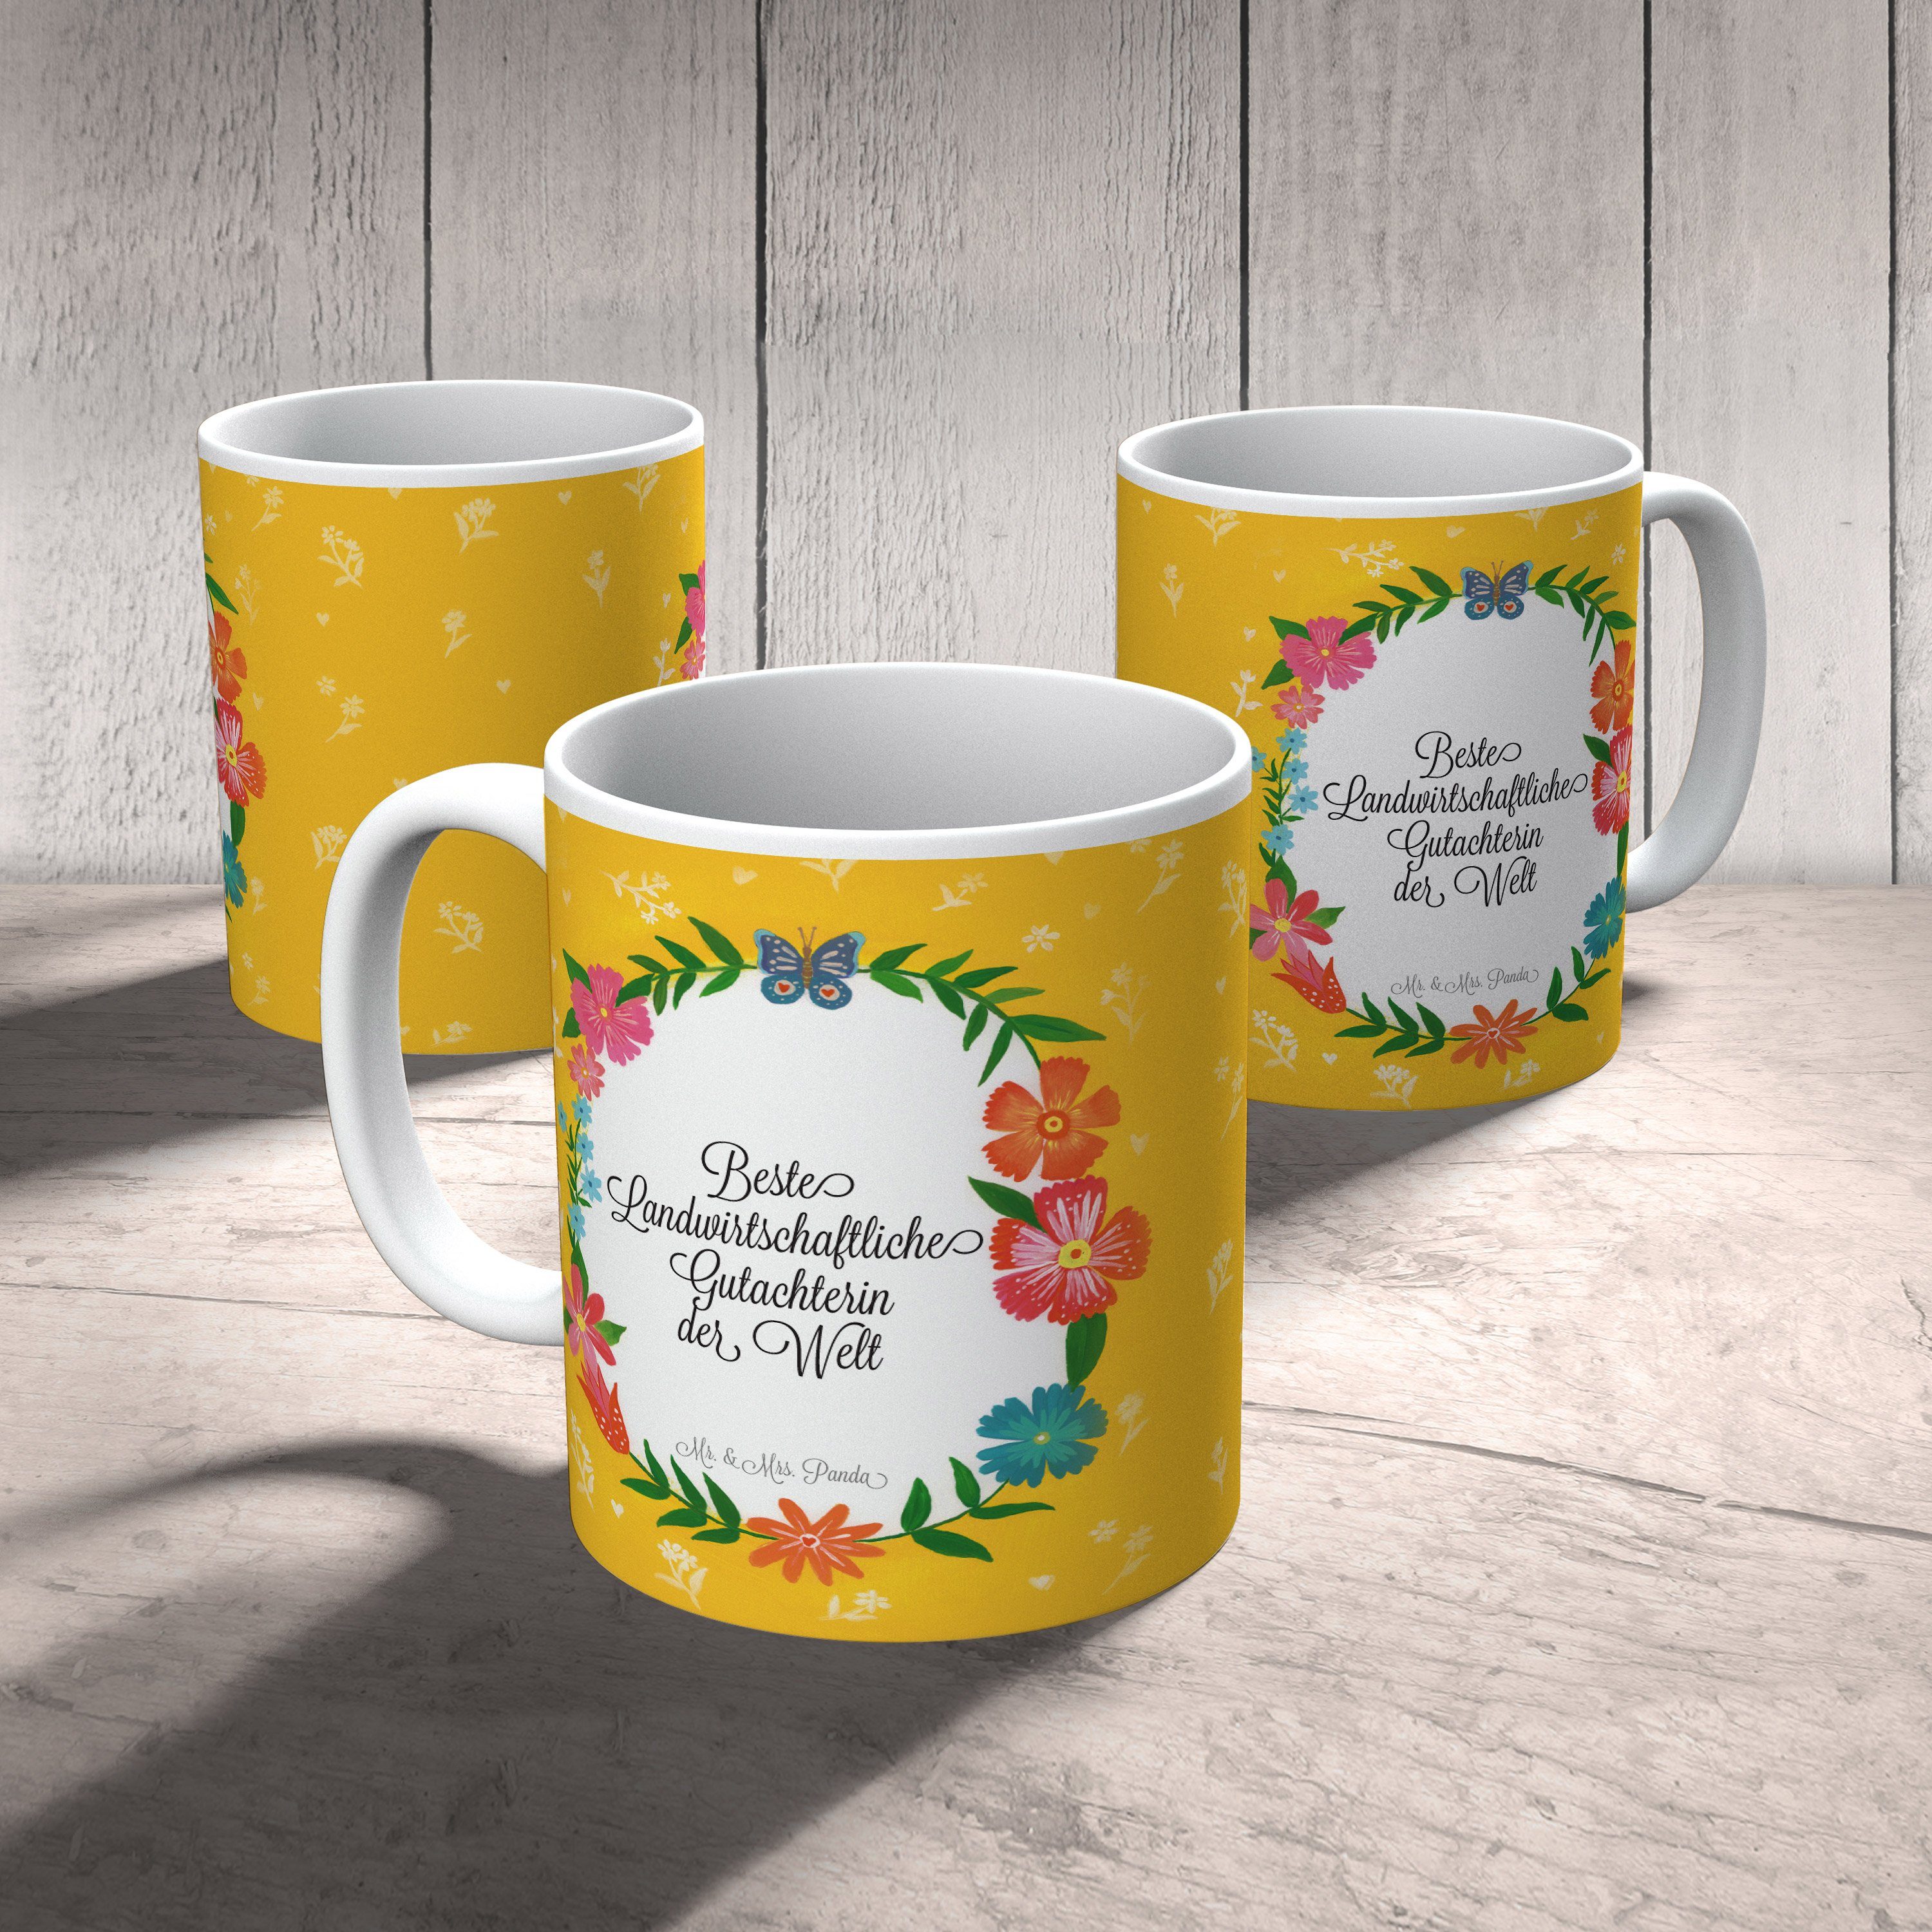 Tasse Geschenk, K, Kaffeebecher, Mrs. & Panda Landwirtschaftliche Keramik Gutachterin Mr. Abschied, -